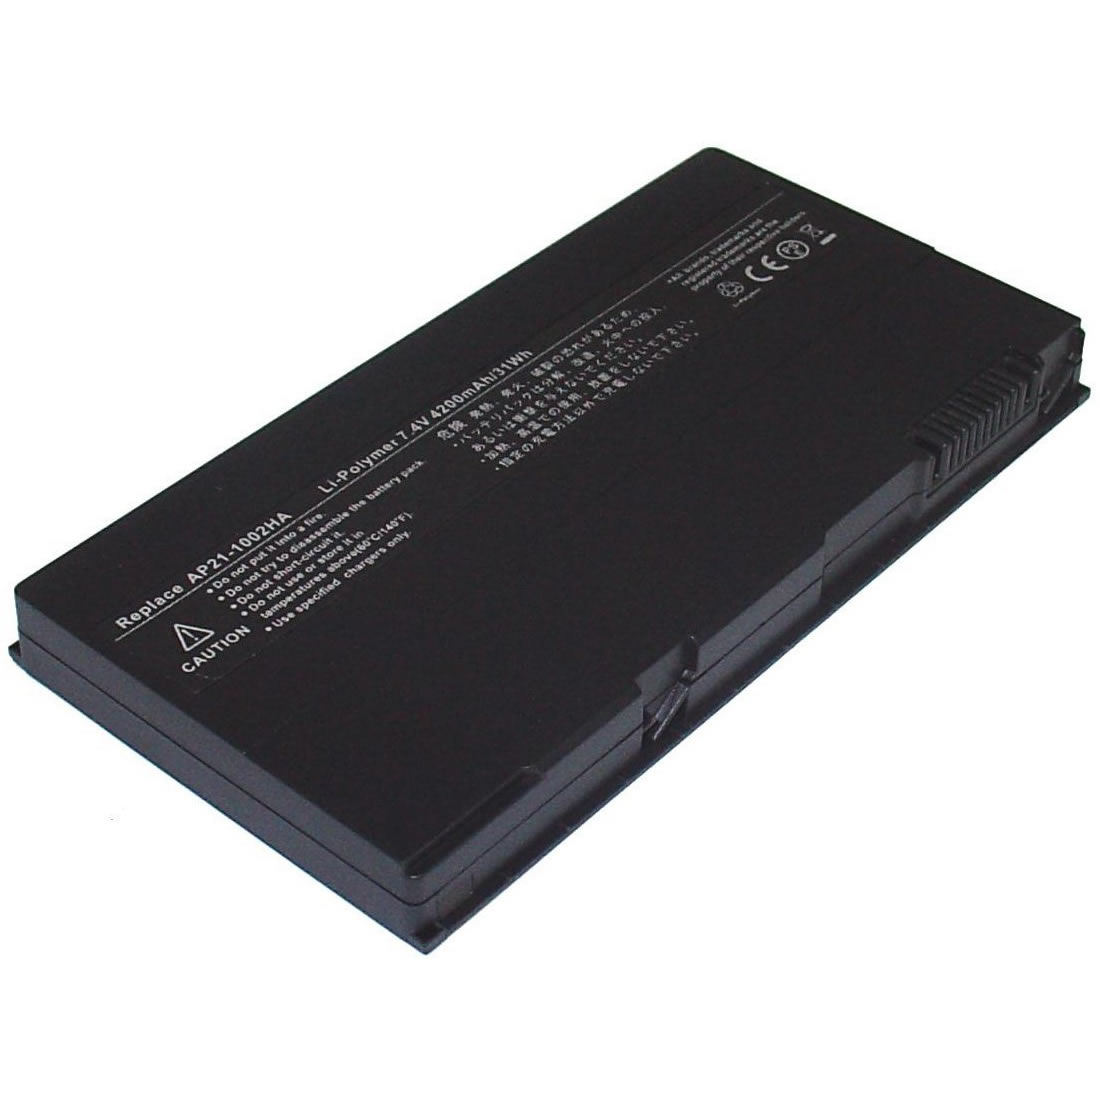 Asus AP21-1002HA 7.4V 4200mAh Replacement Battery for Asus M1100 M1110 M1111 M1115 Series